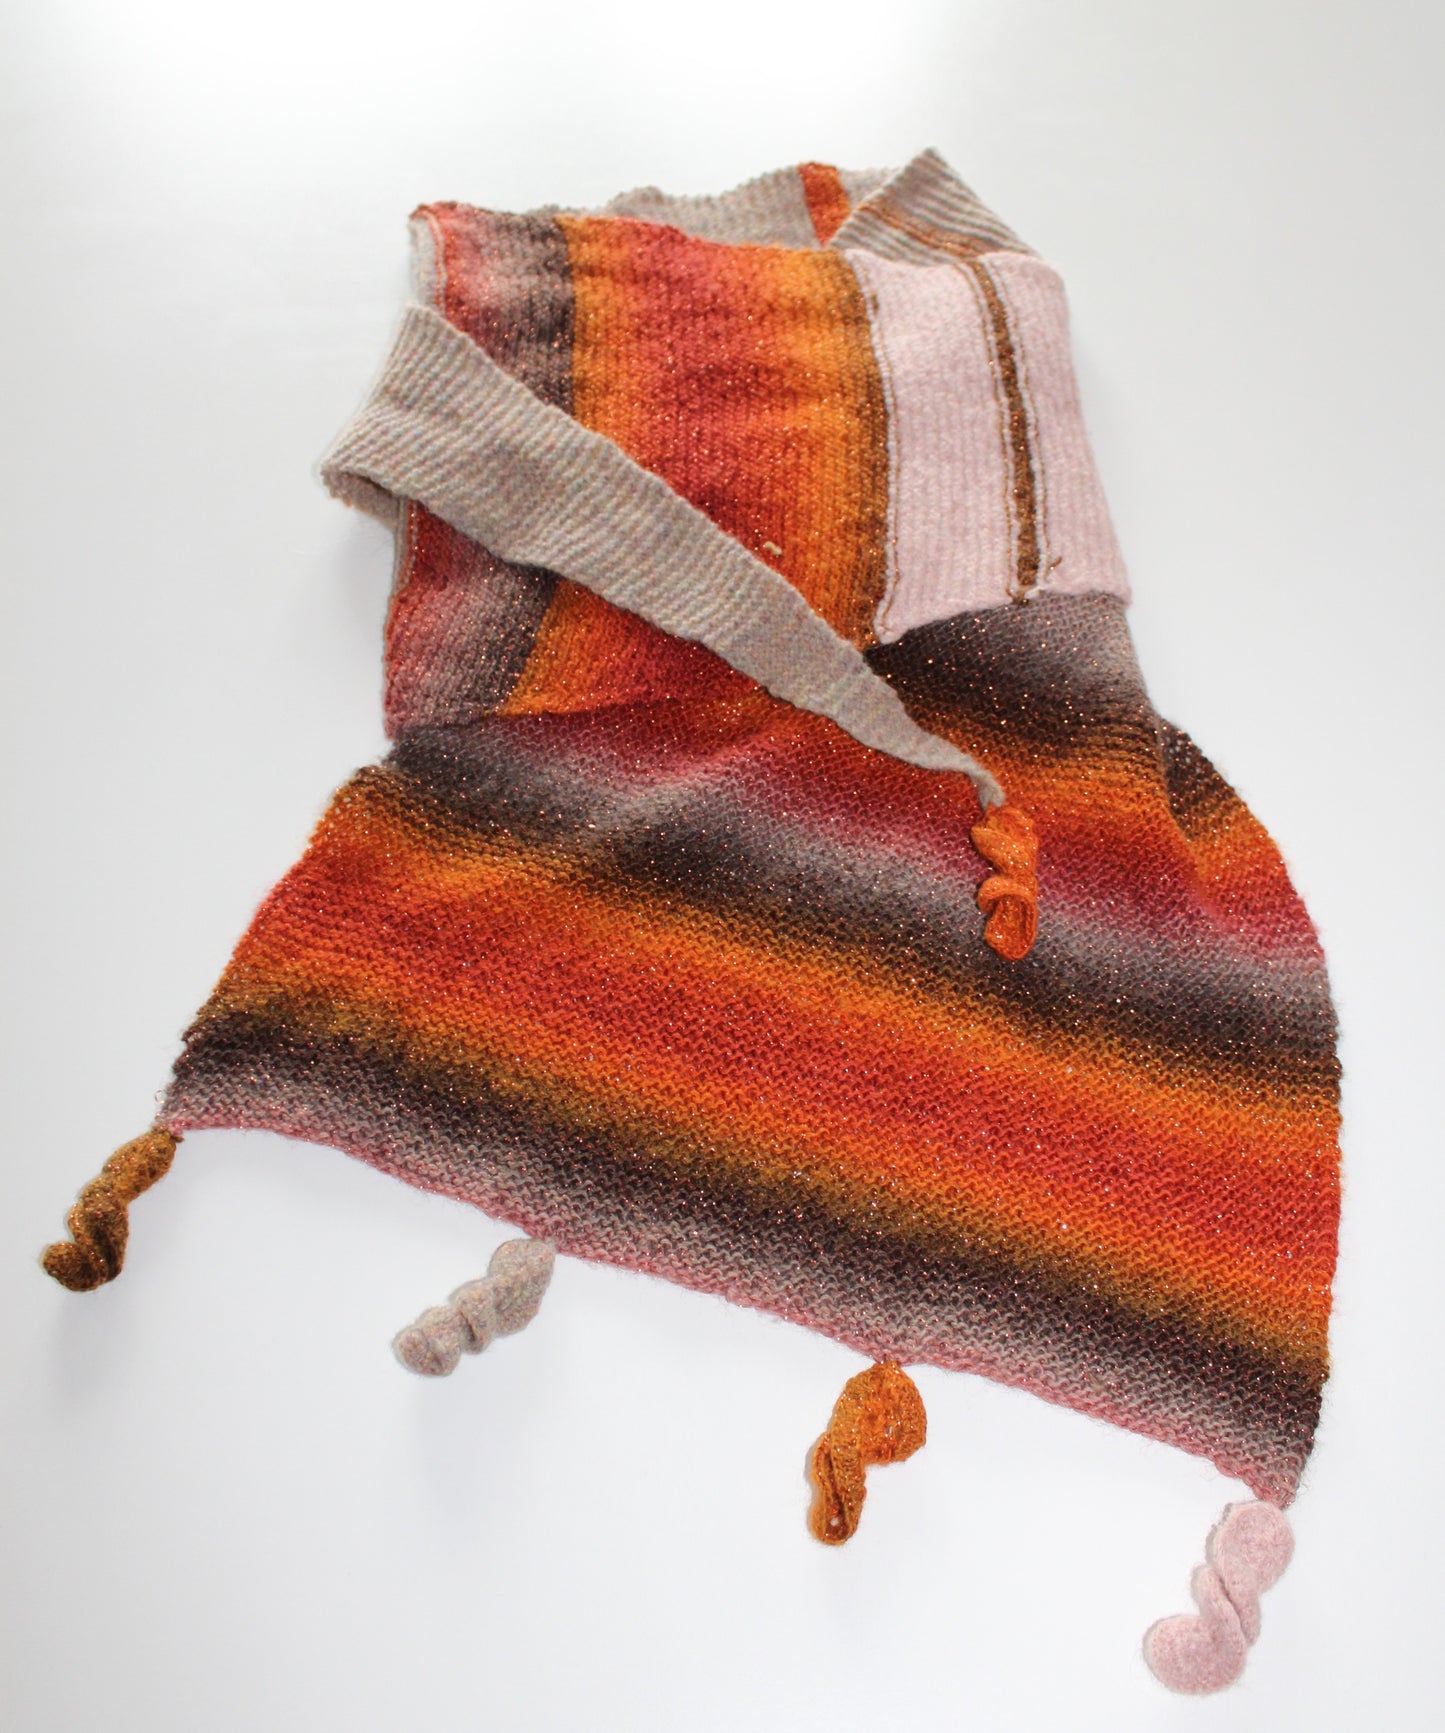 Homemade - strikket sjal kileformet  i multifarver